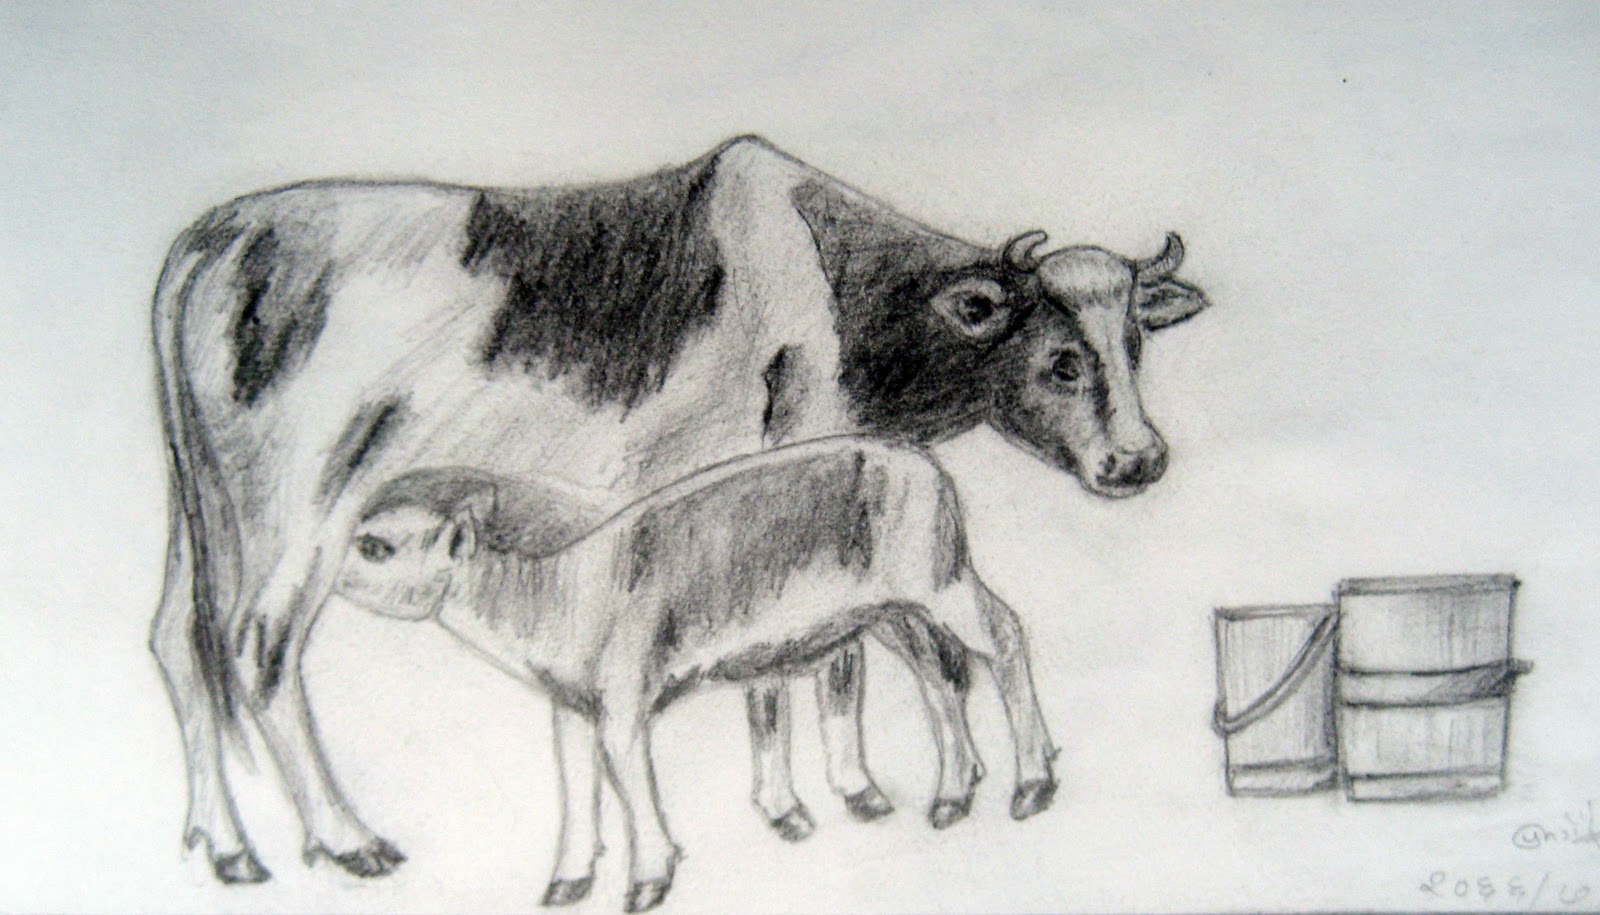 1600x915 Cow Pencil Sketches Drawn Cow Pencil Sketch - Cow Pencil Ske...